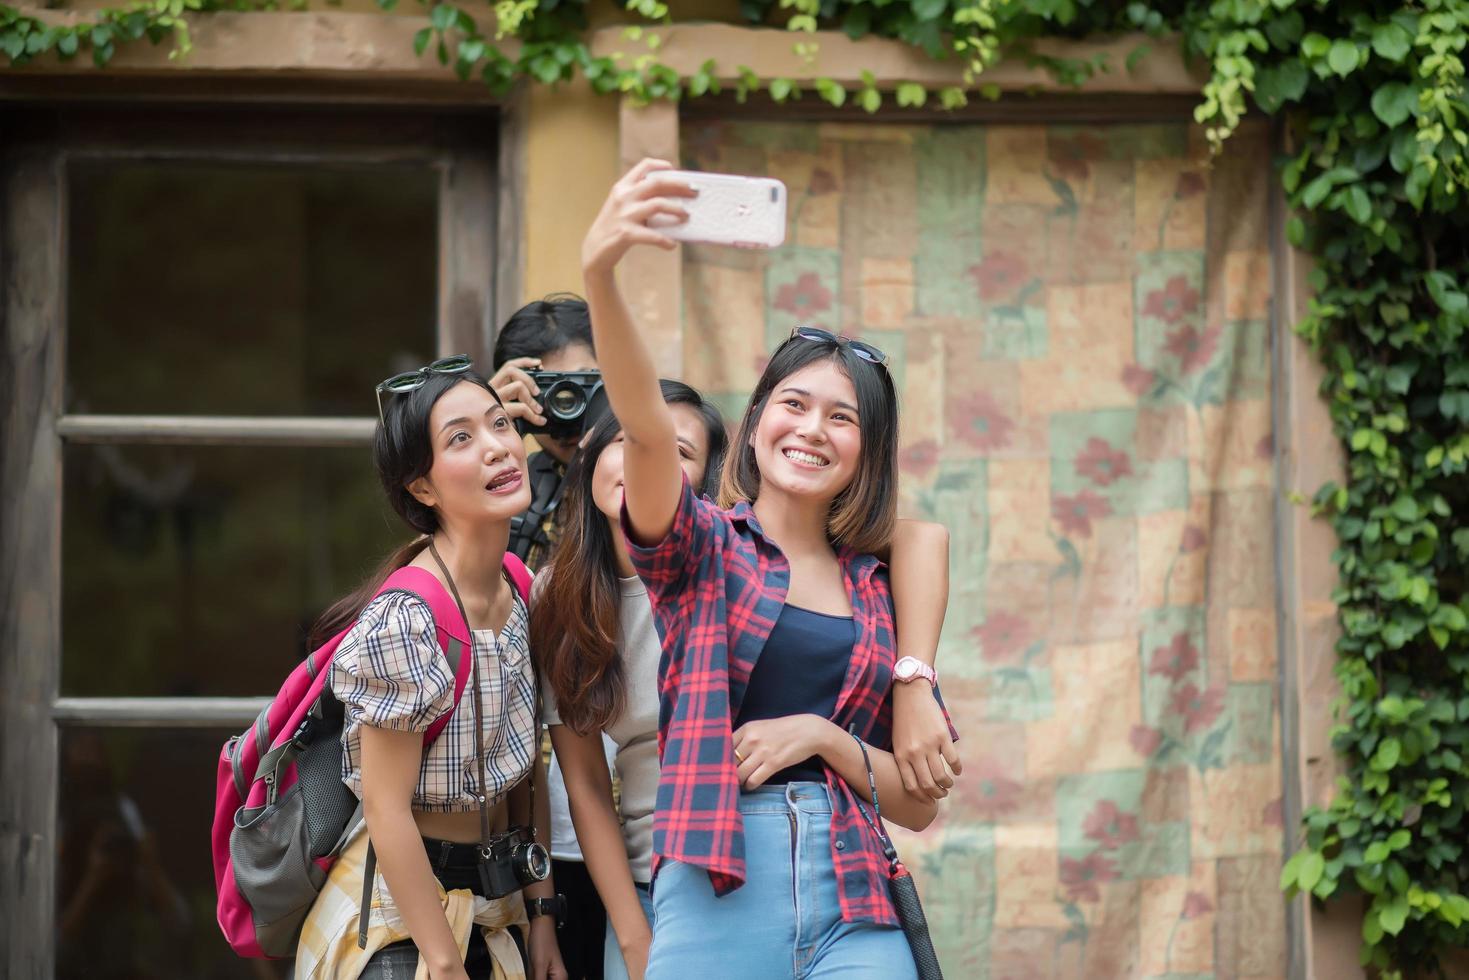 grupp vänner tar en selfie på en stadsgata som har kul tillsammans foto